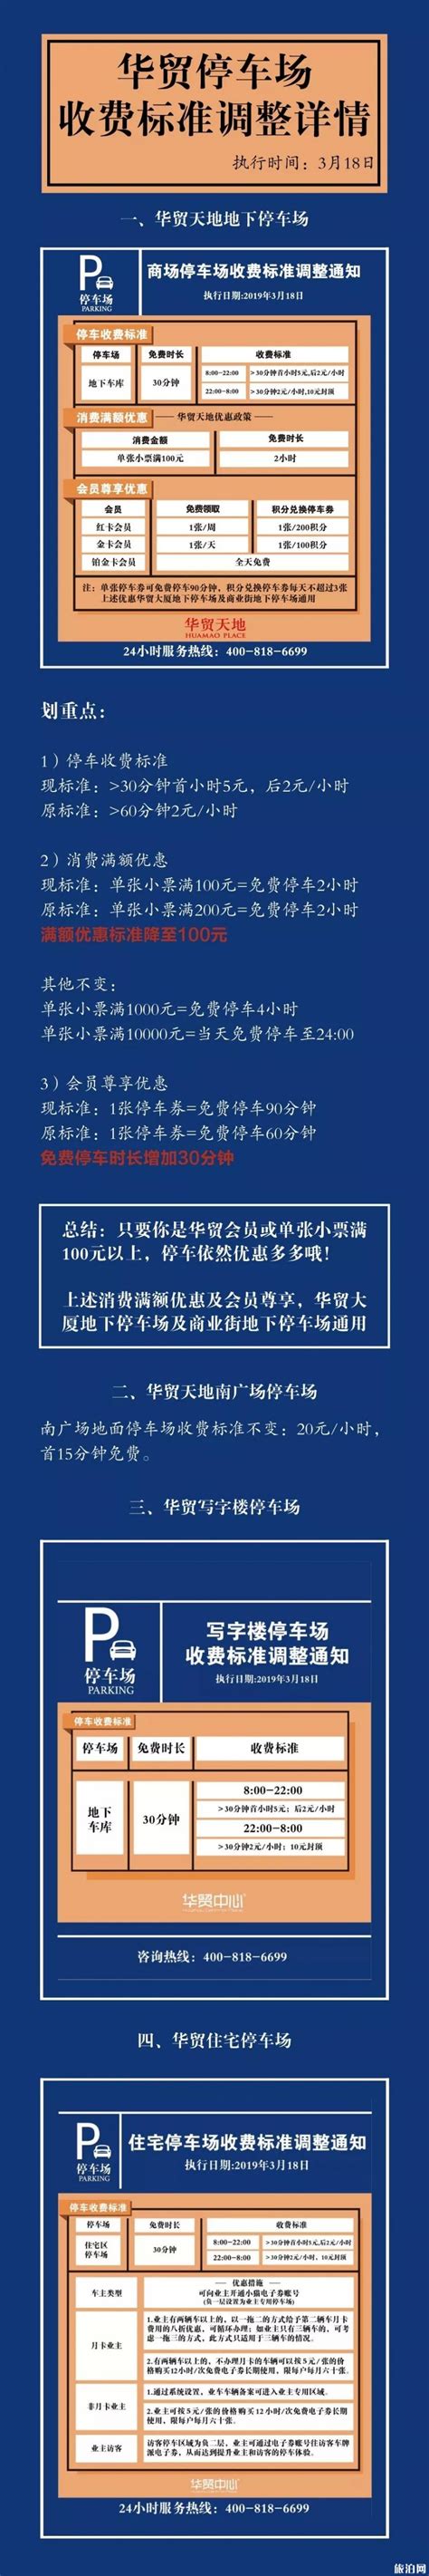 惠州市技师学院2017年收费标准_广东招生网